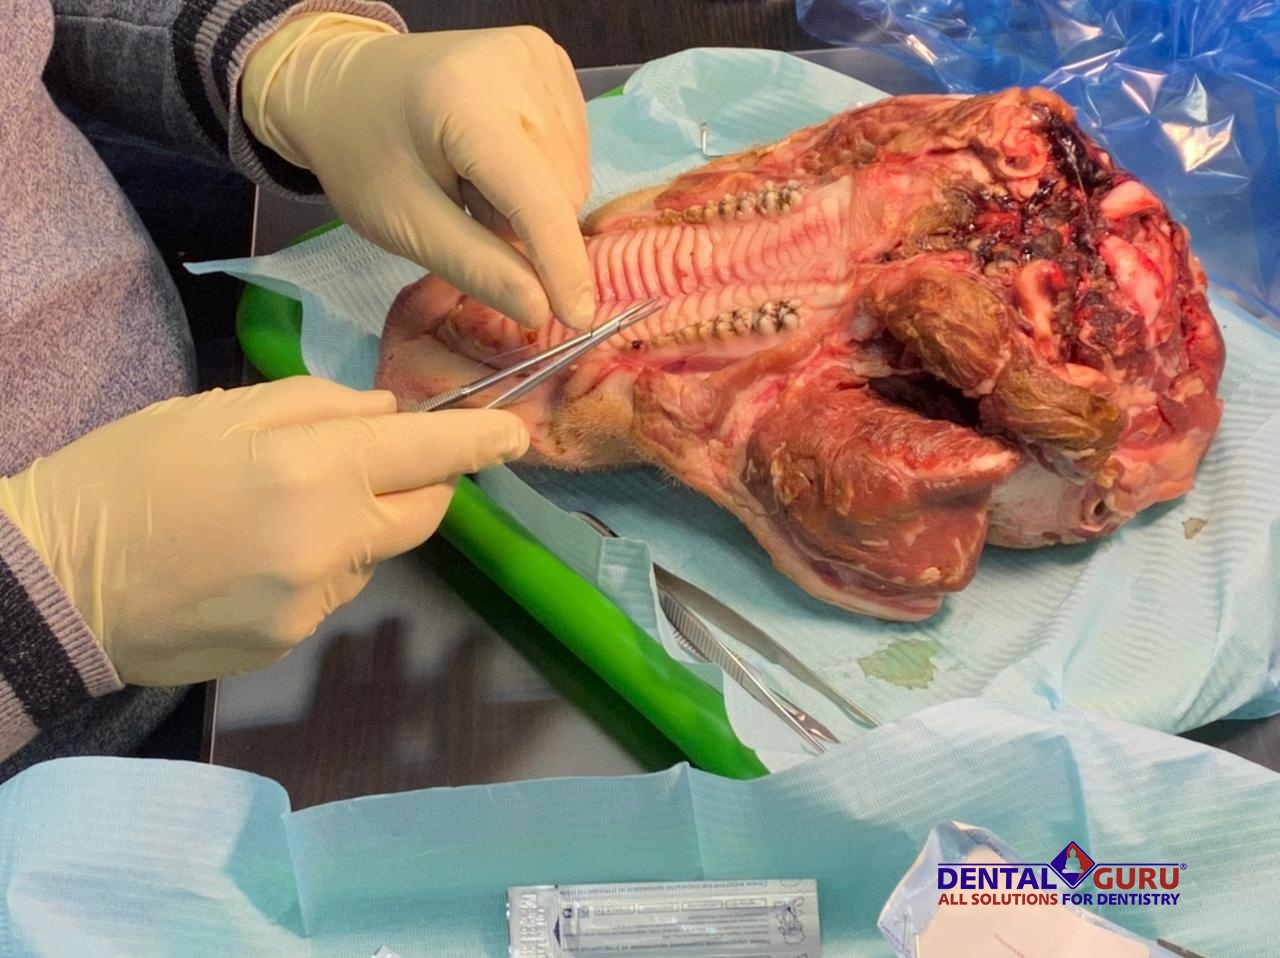 Дентальная имплантация с одновременной пластикой мягких тканей в сложных клинических случаях. 3 апреля 2021-WhatsApp Image 2021-04-05 at 11.38.37.jpeg